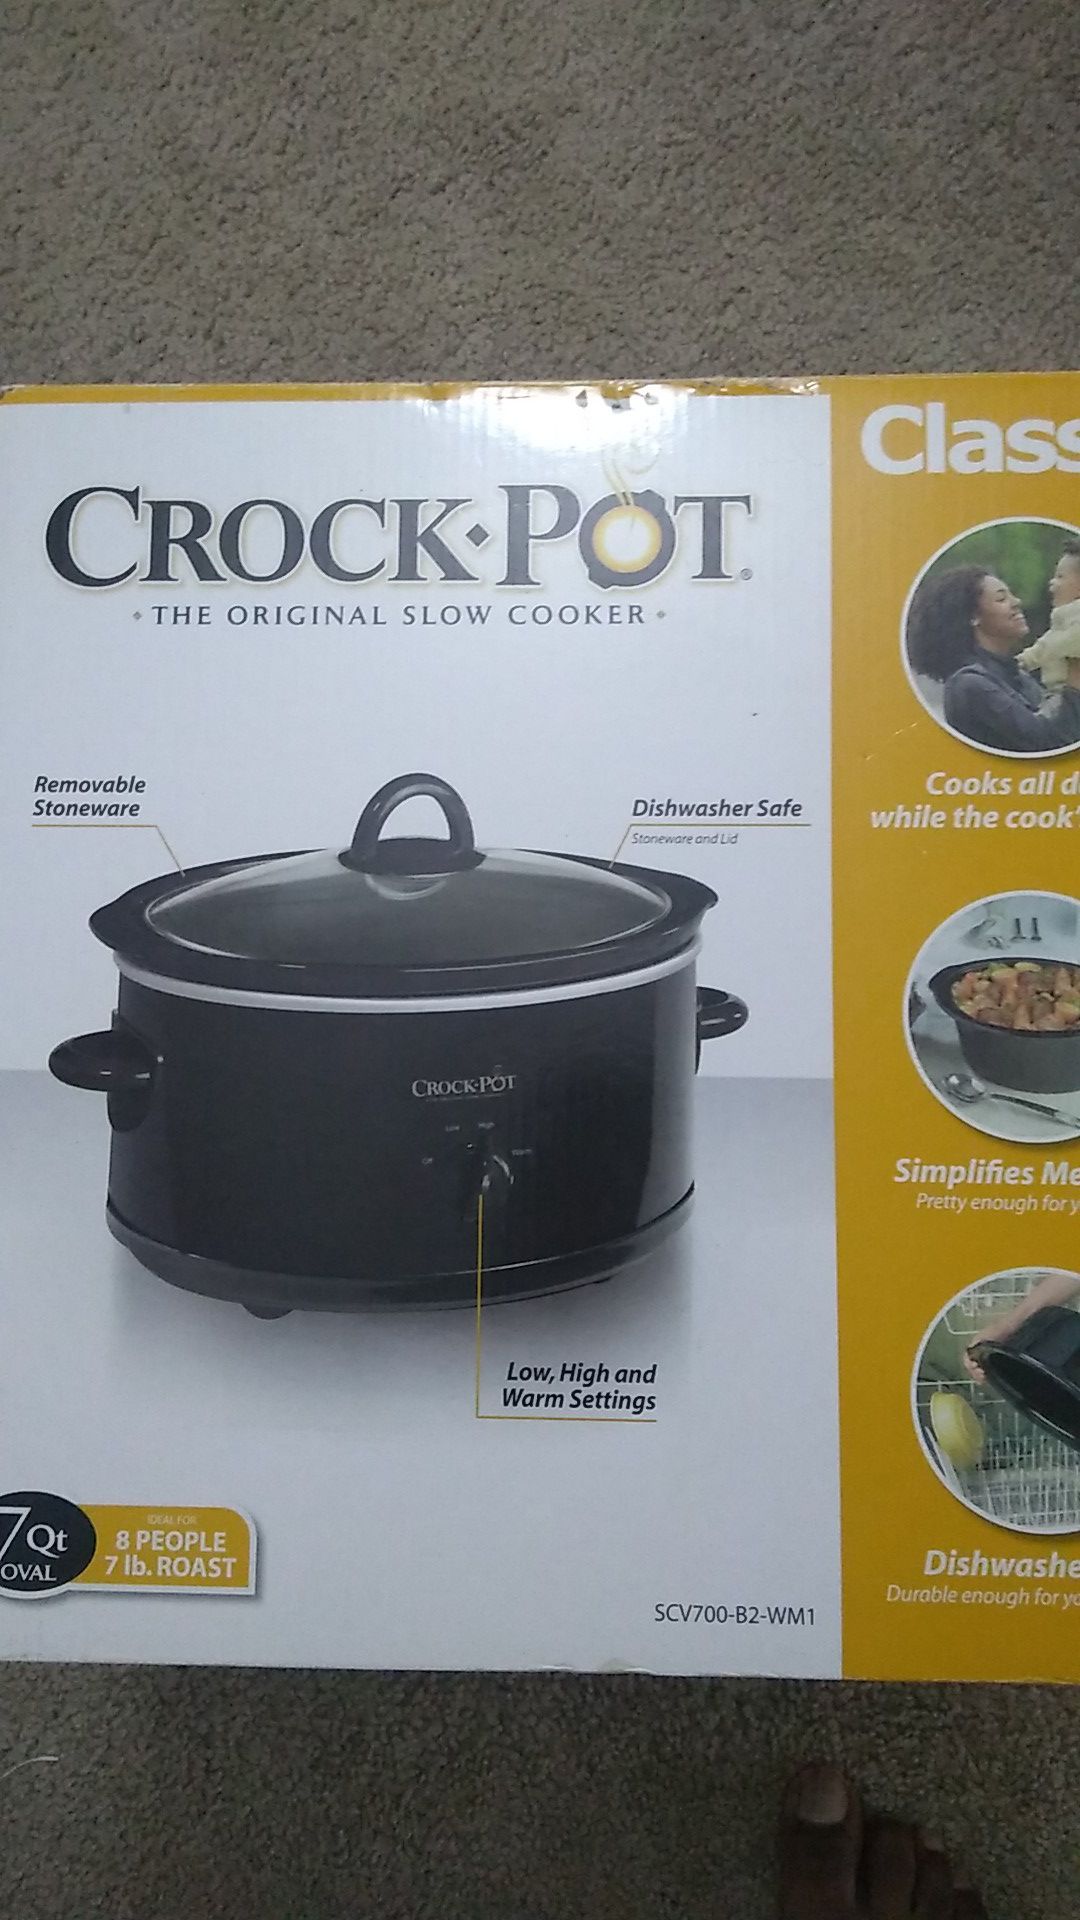 Crock pot original slow cooker -7qt oval